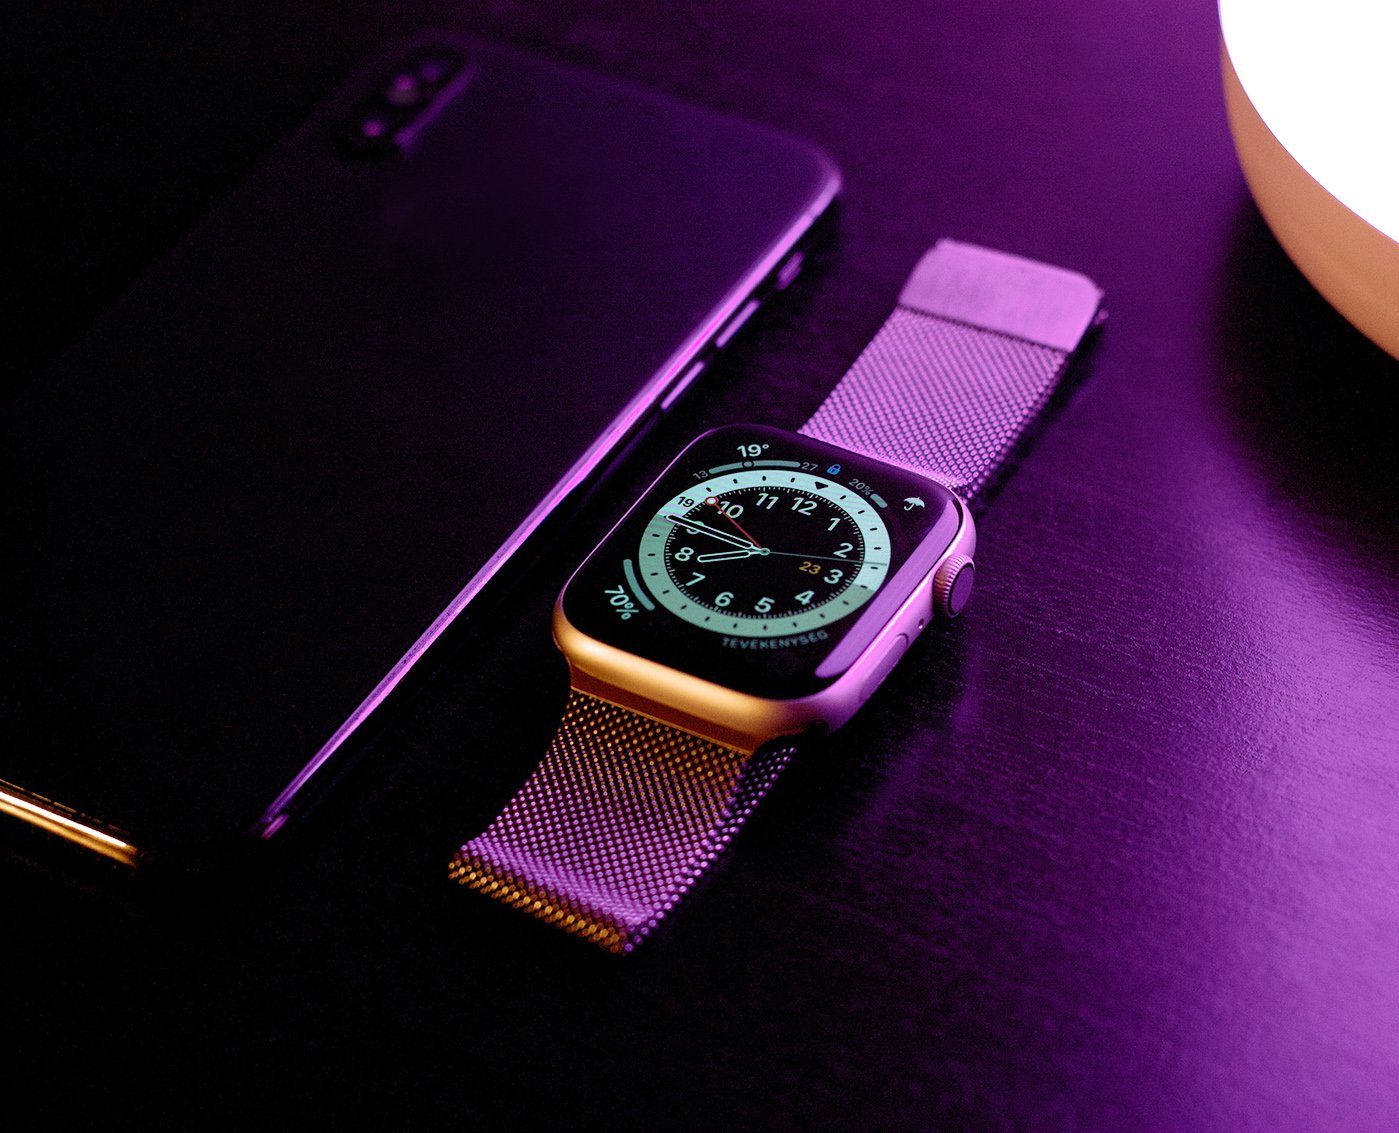 für 8/7/6/5/4/3/2/1/SE Magnet in Ersatzarmband Watch PRECORN silber Apple Smartwatch-Armband mit